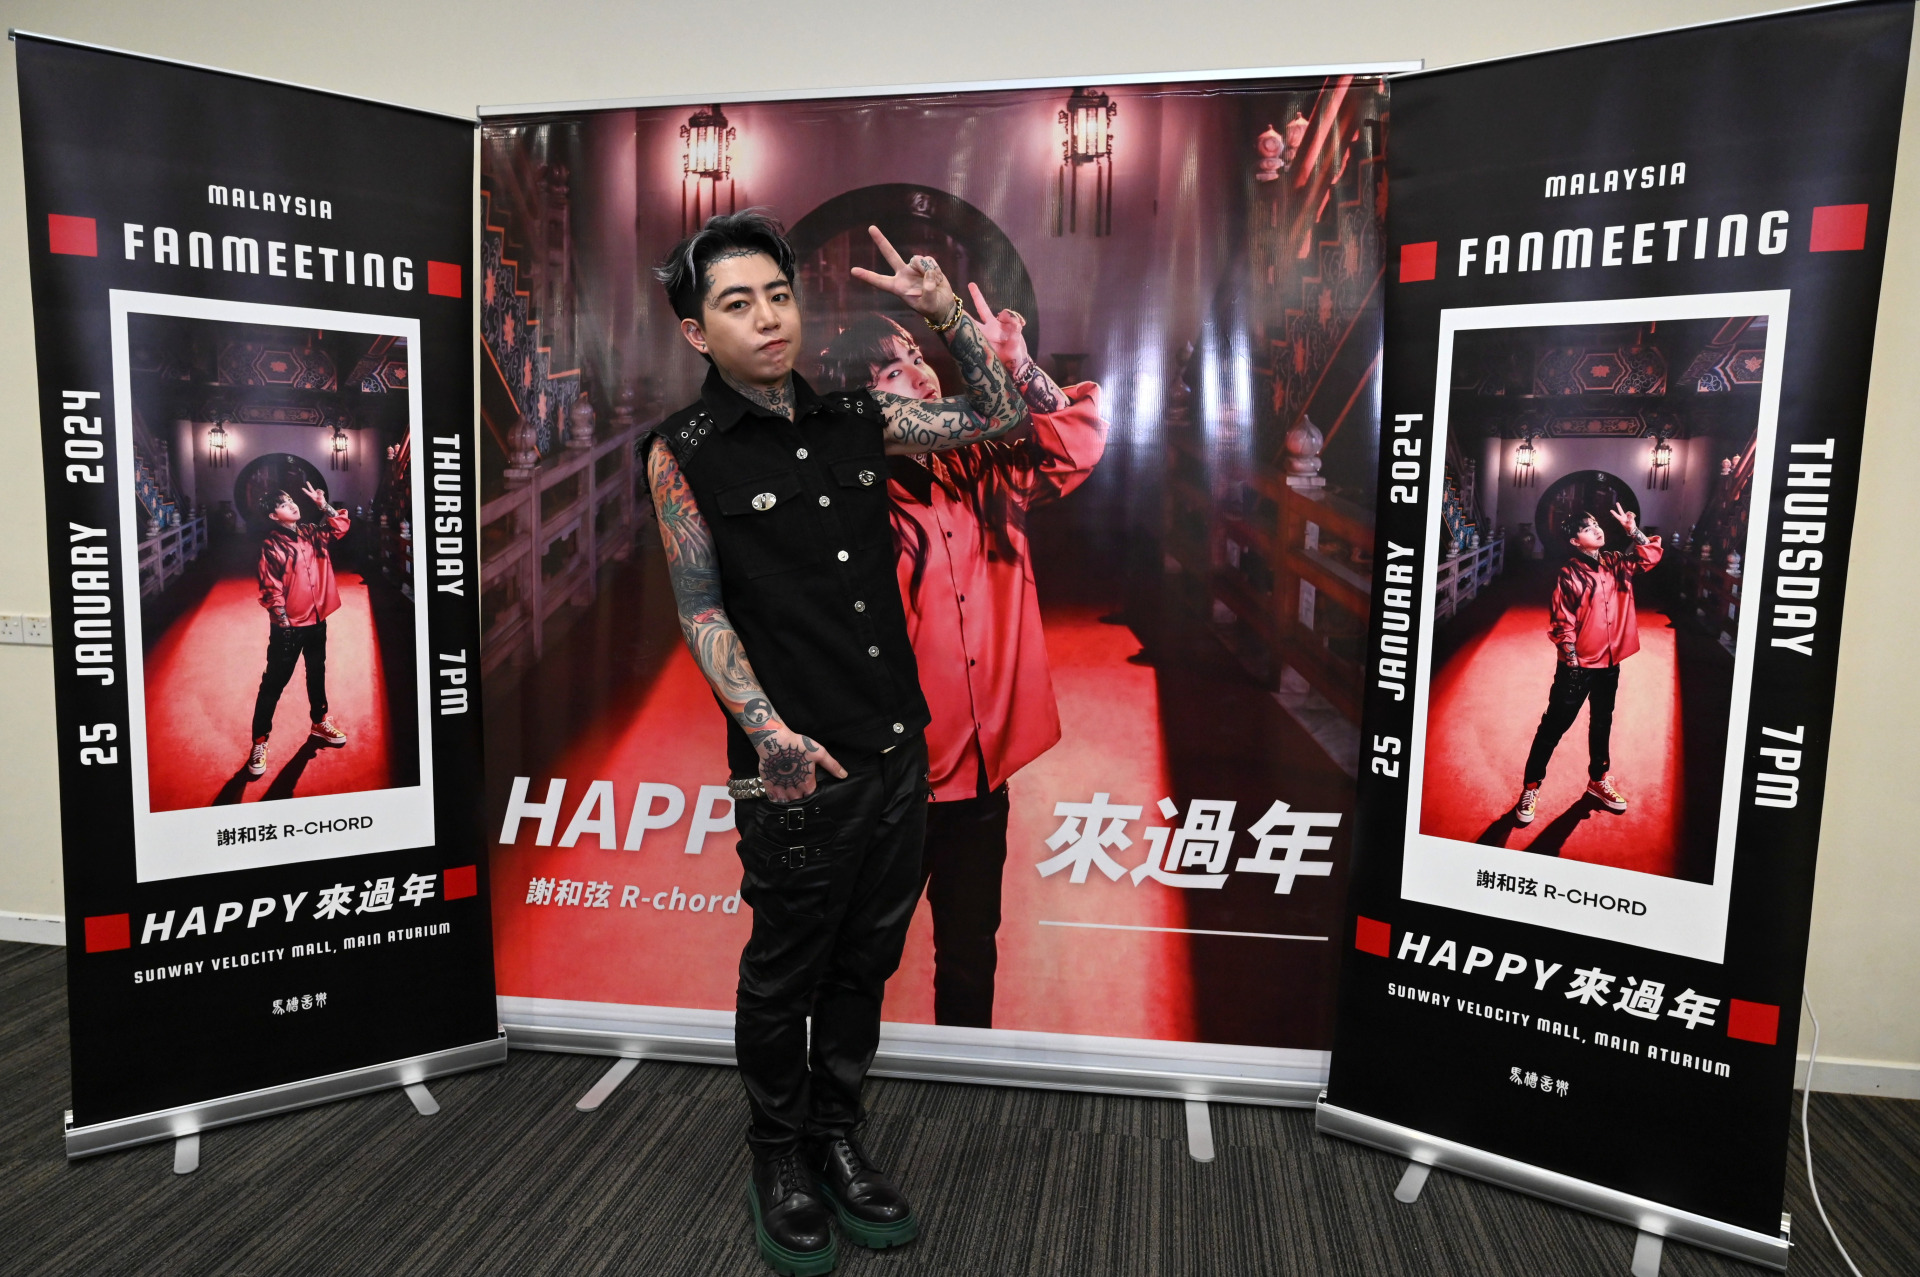 谢和弦带着新年歌《Happy来过年》来马宣传。